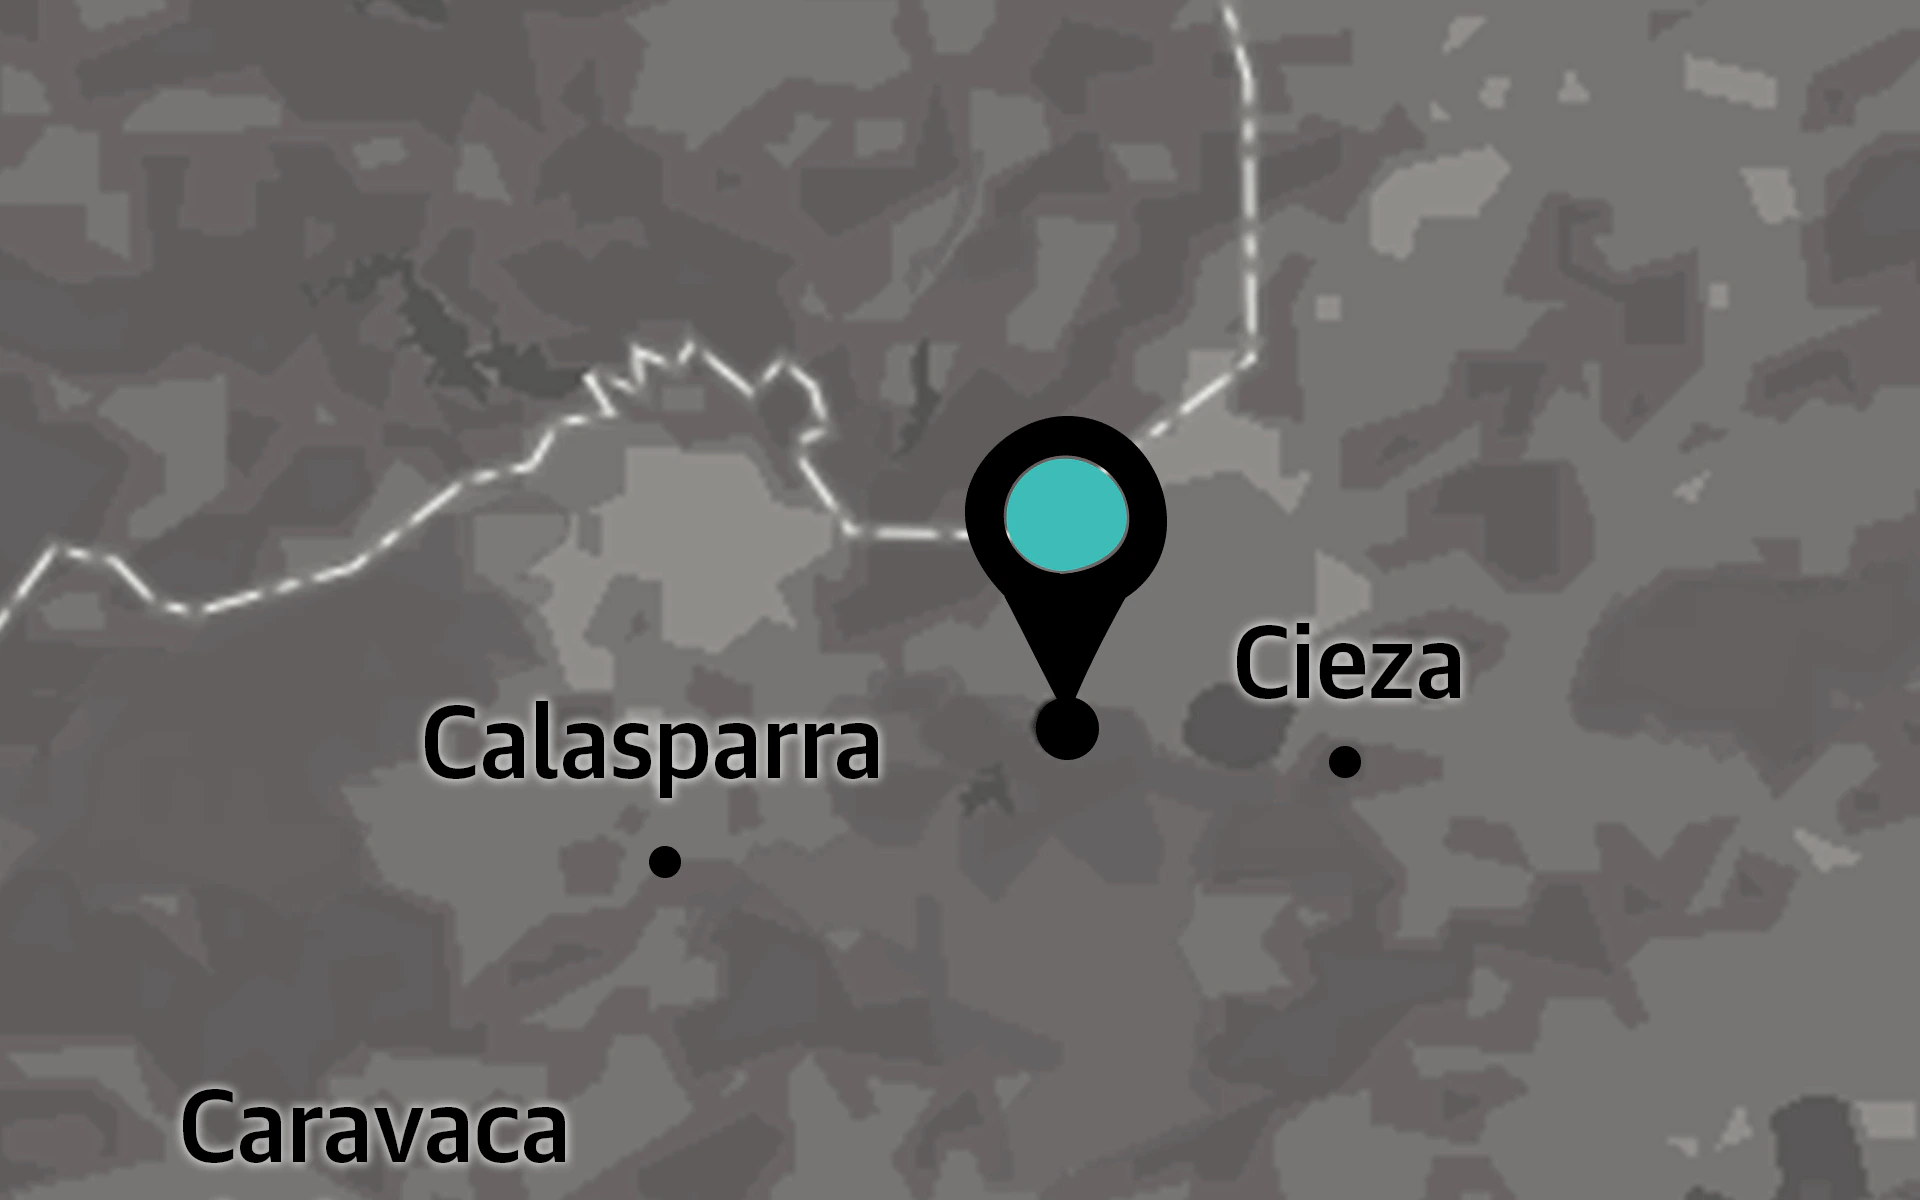 The Serreta de Cieza